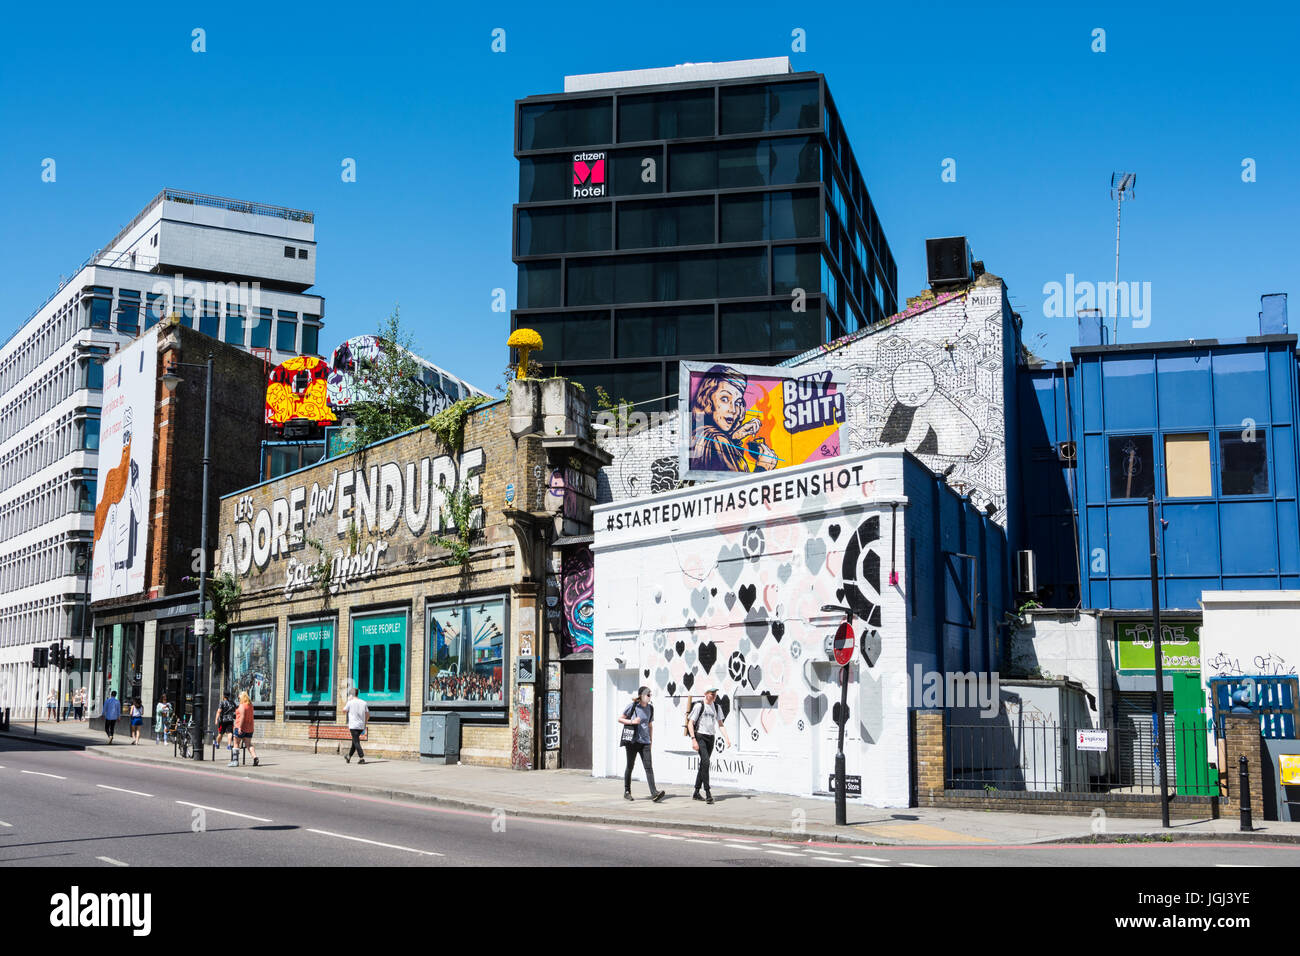 Adore et endurons les autres graffitis de Steven Powers dans Great Eastern Street, Londres. Banque D'Images